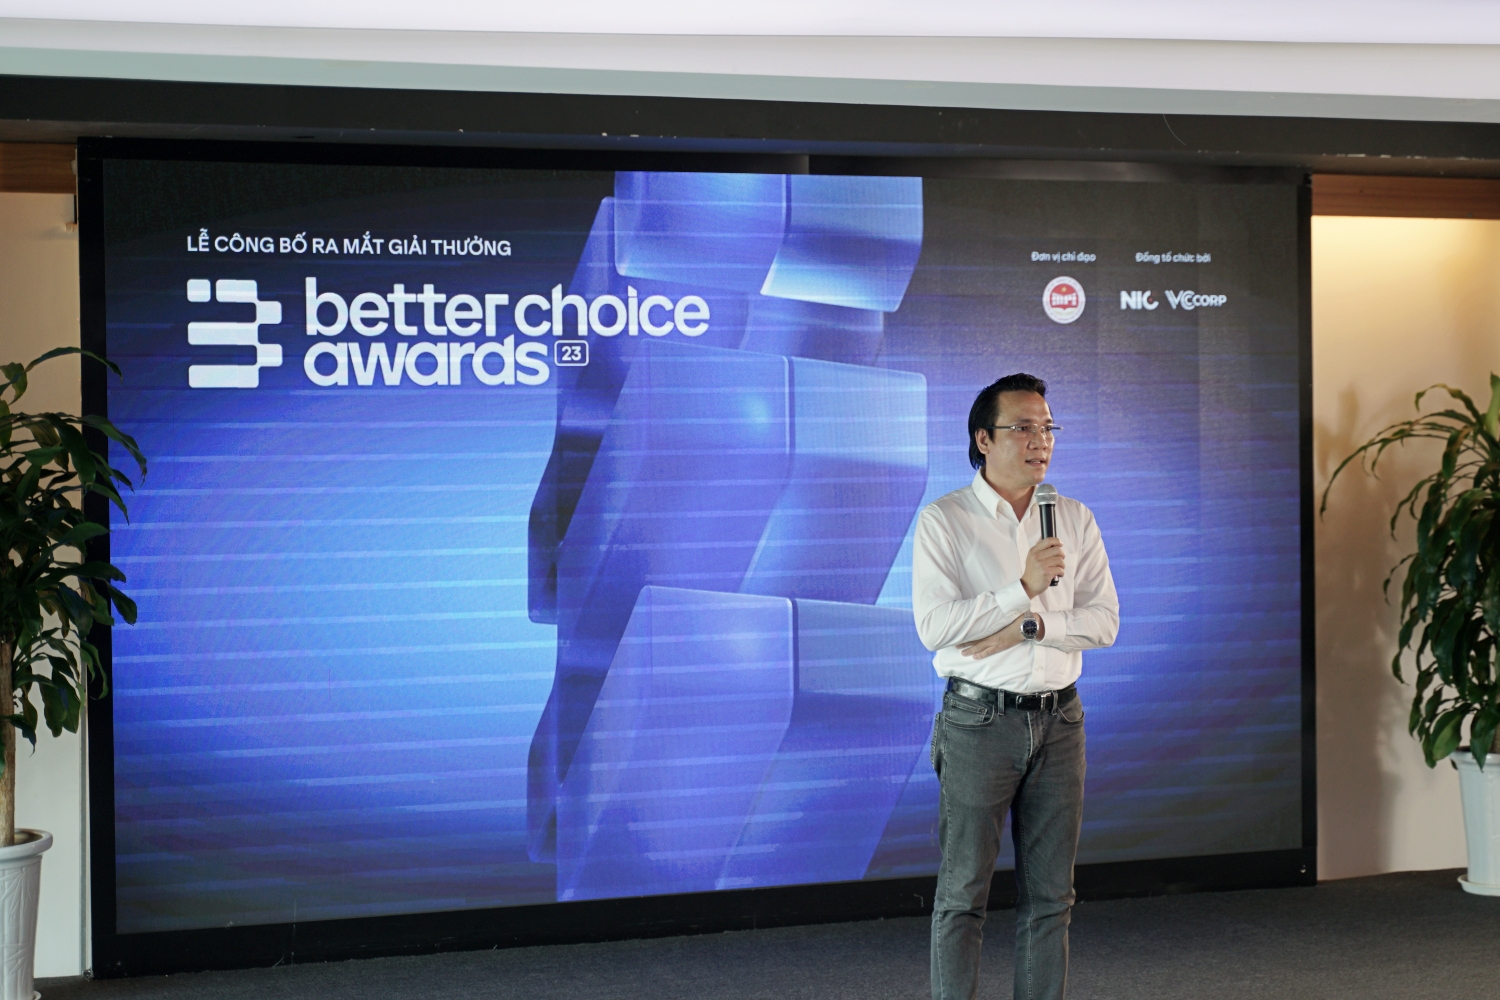 Công bố Better Choice Awards: Tôn vinh đổi mới sáng tạo, giá trị khác biệt, giúp người dùng tìm thấy những thứ “tốt hơn” - Ảnh 3.